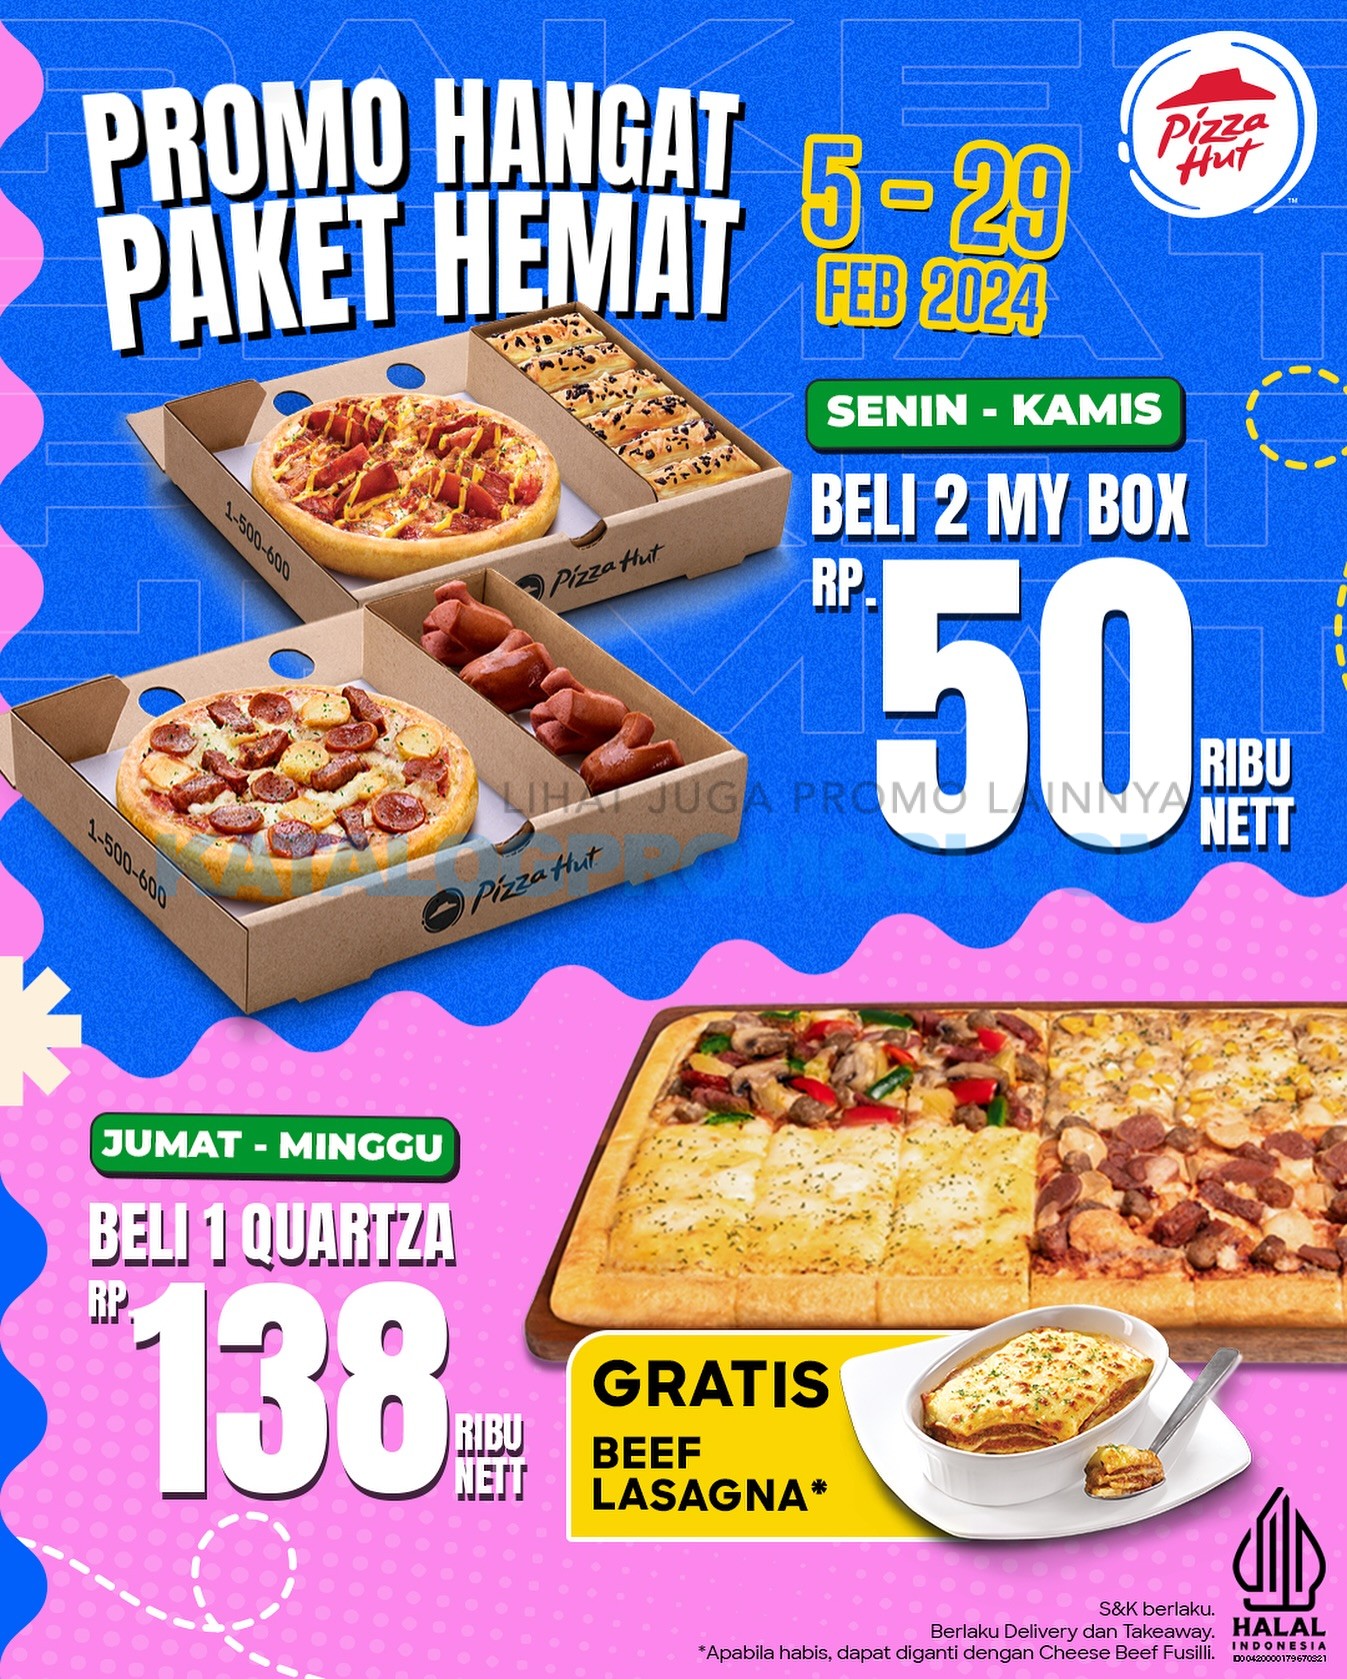 Promo PIZZA HUT PAKET HEMAT SETIAP HARI berlaku mulai tanggal 05-29 FEBRUARI 2024